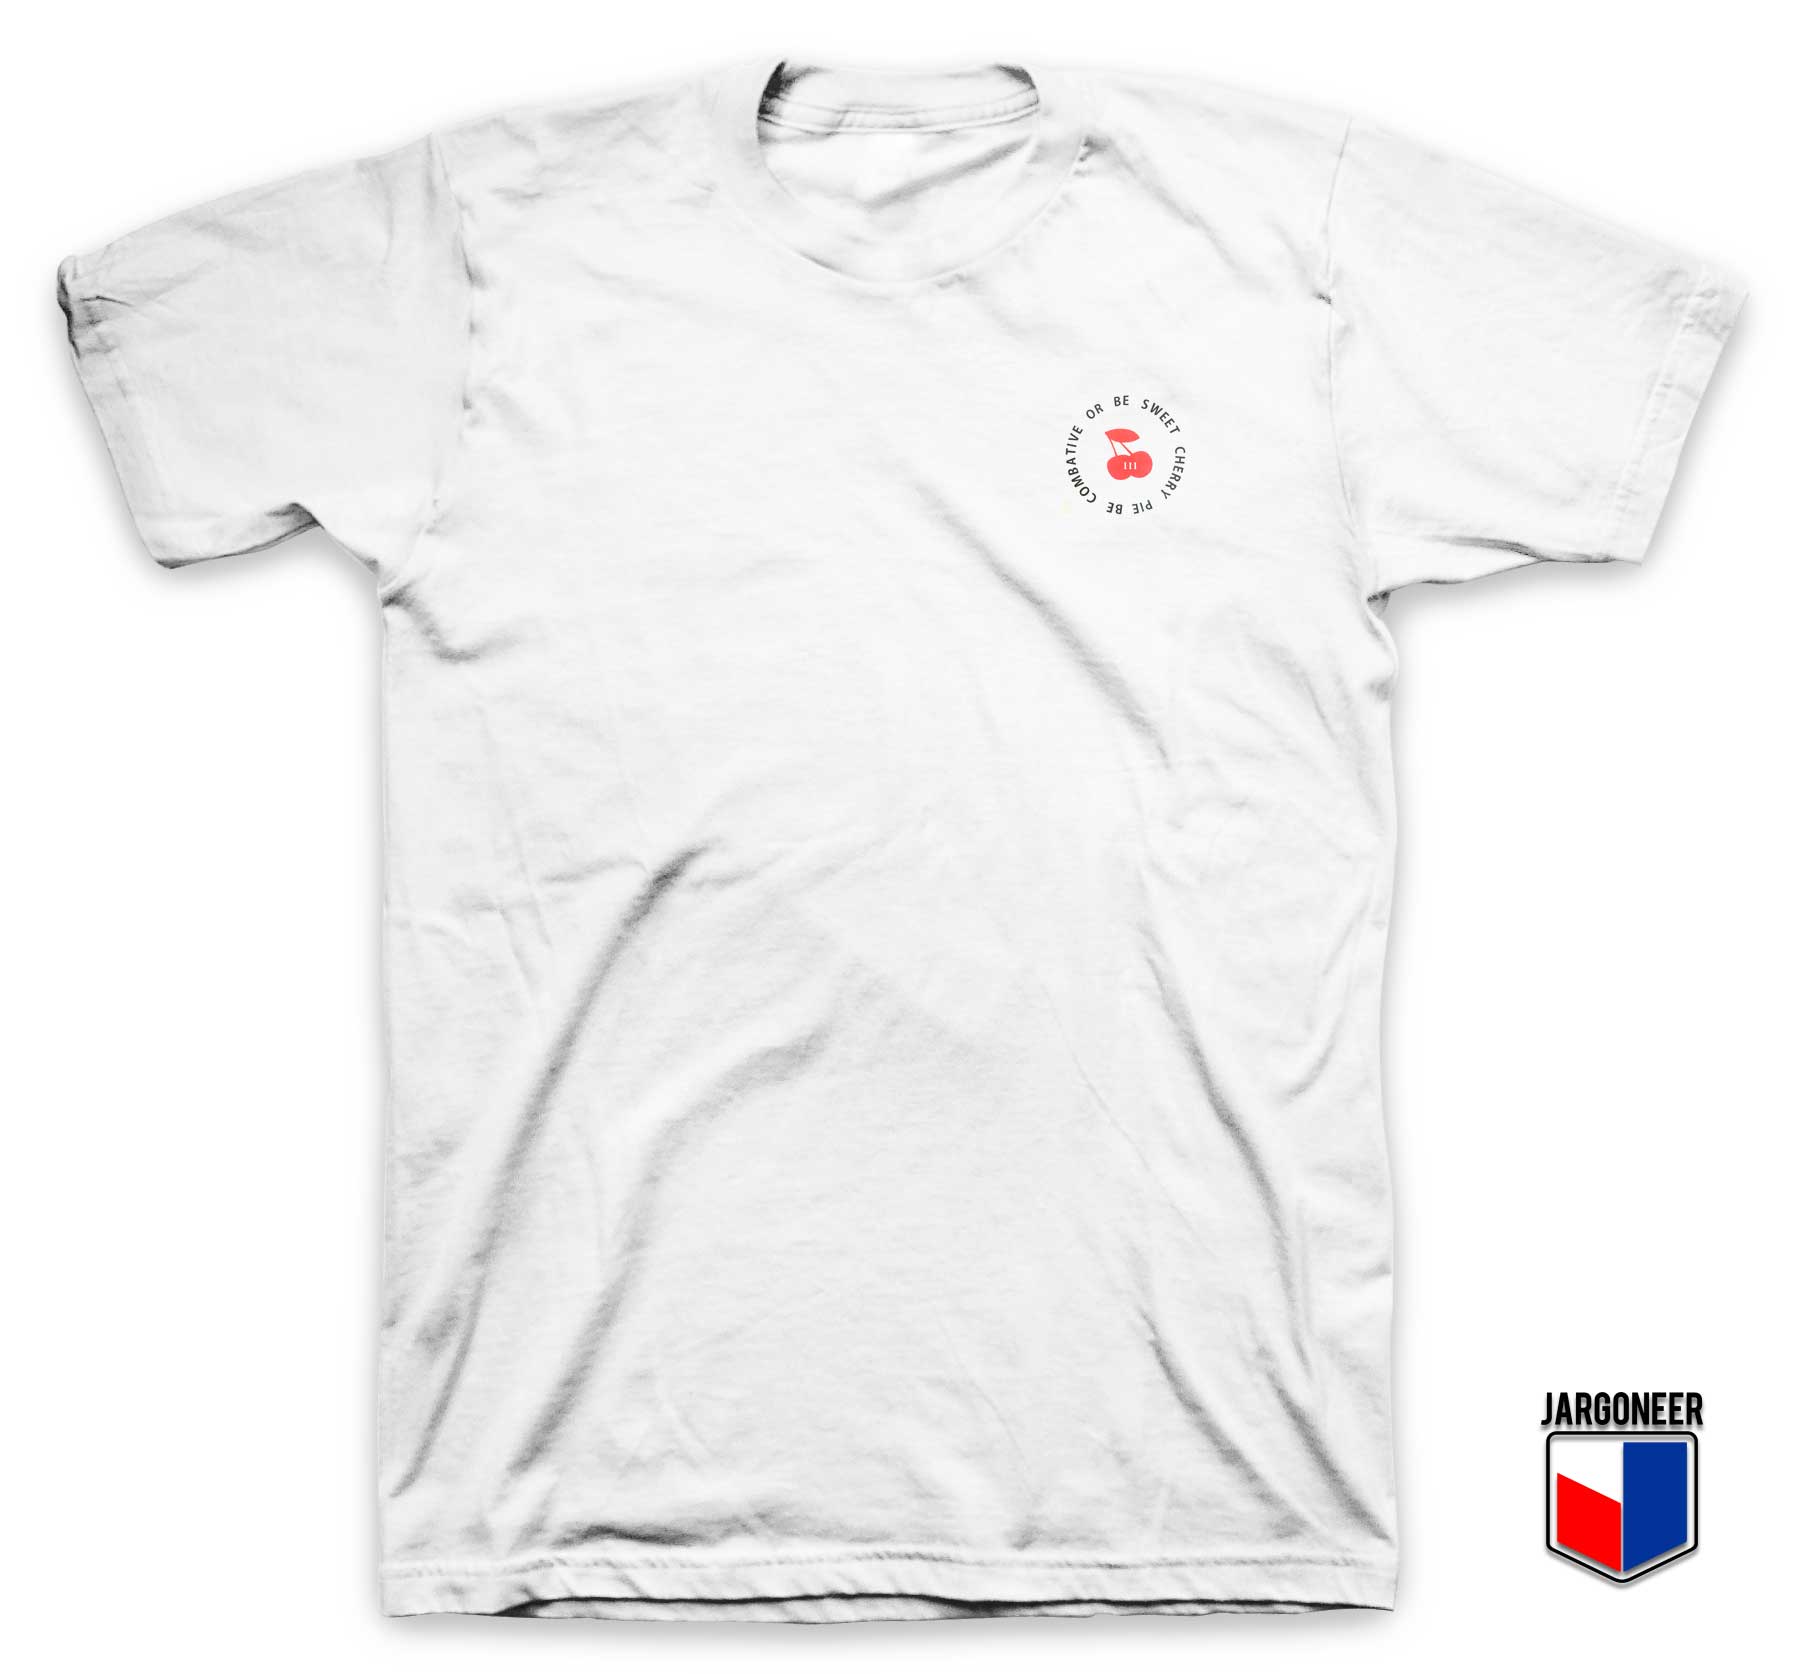 Sweet Cherry Pie T Shirt - Shop Unique Graphic Cool Shirt Designs